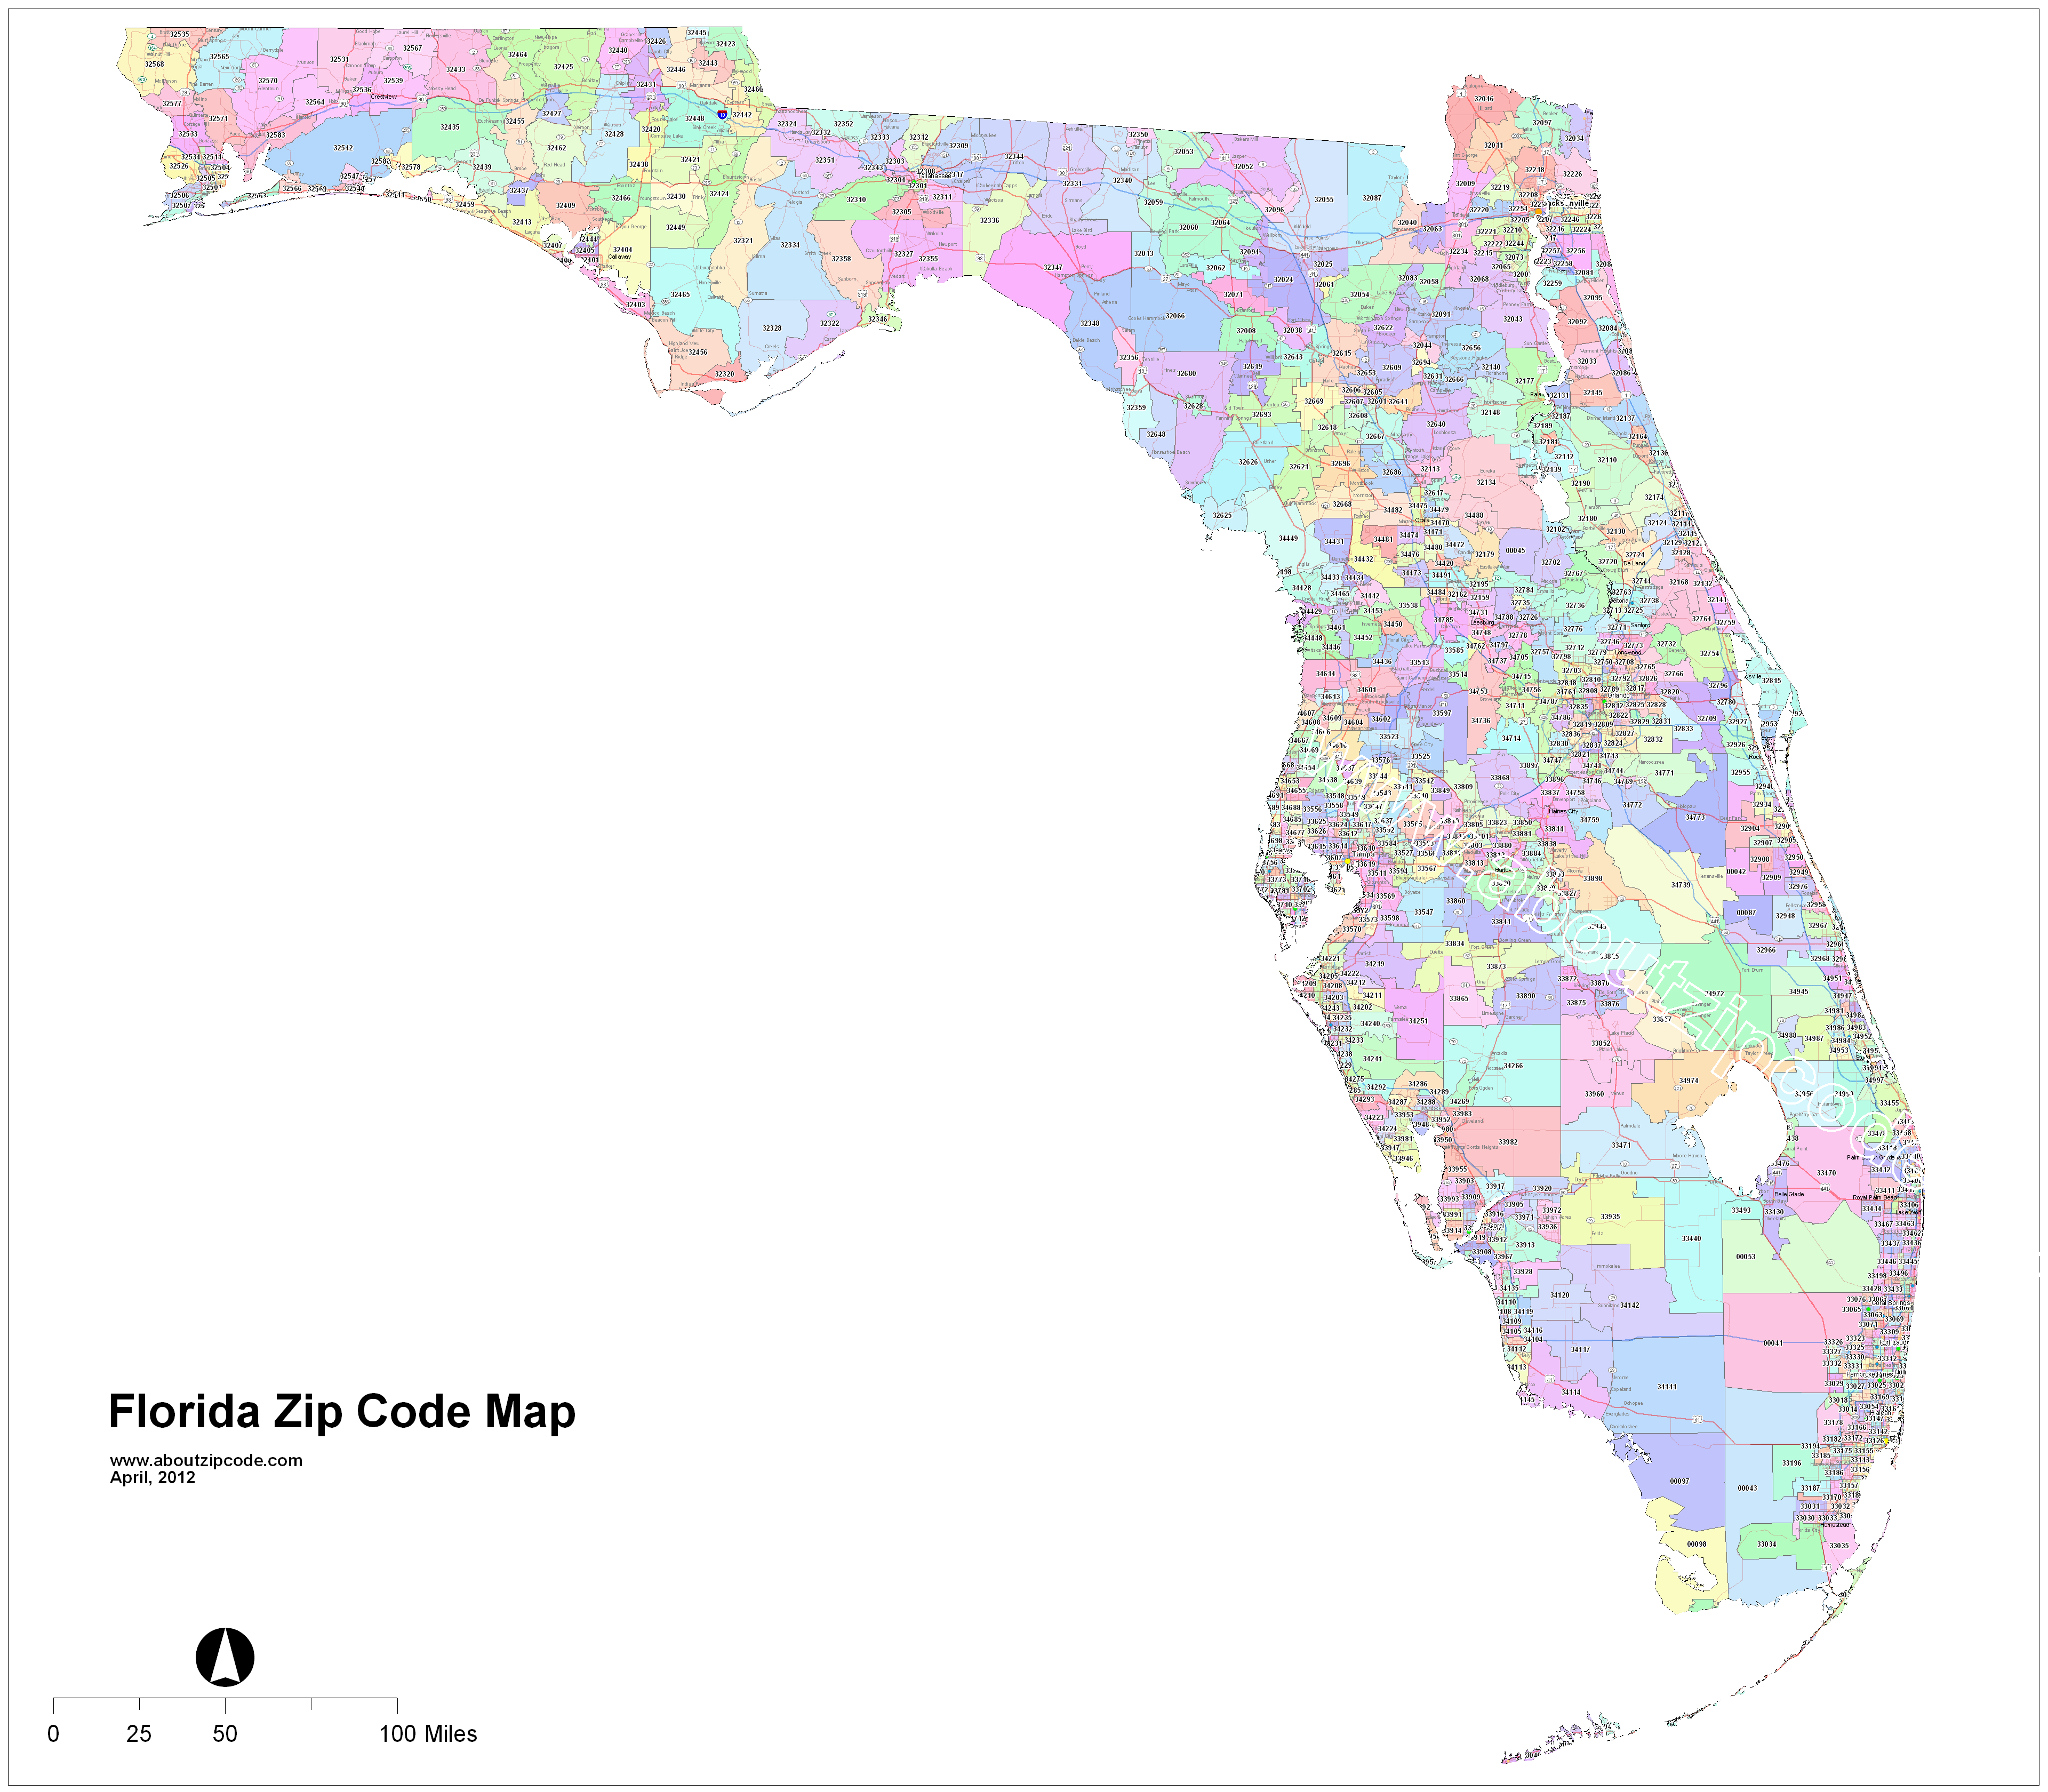 seminole fl zip code map Florida Zip Code Maps Free Florida Zip Code Maps seminole fl zip code map